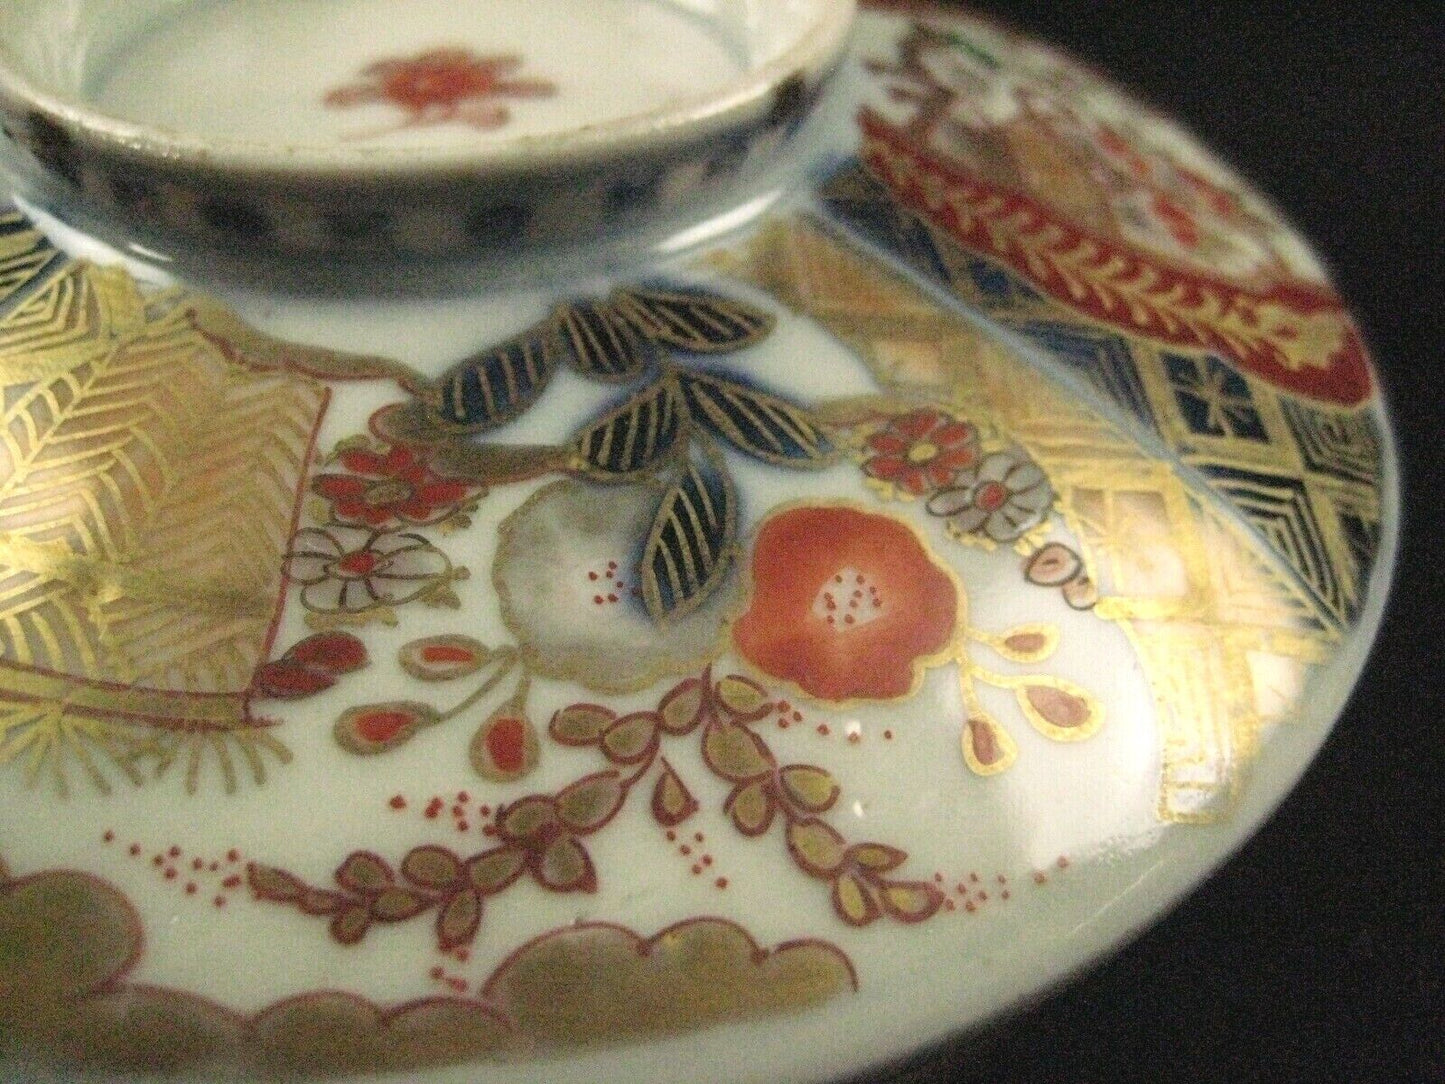 Antique Japanese Set Of 2 (C1880) Signed Lidded Ceramic Imari Bowl Floral 4.5"